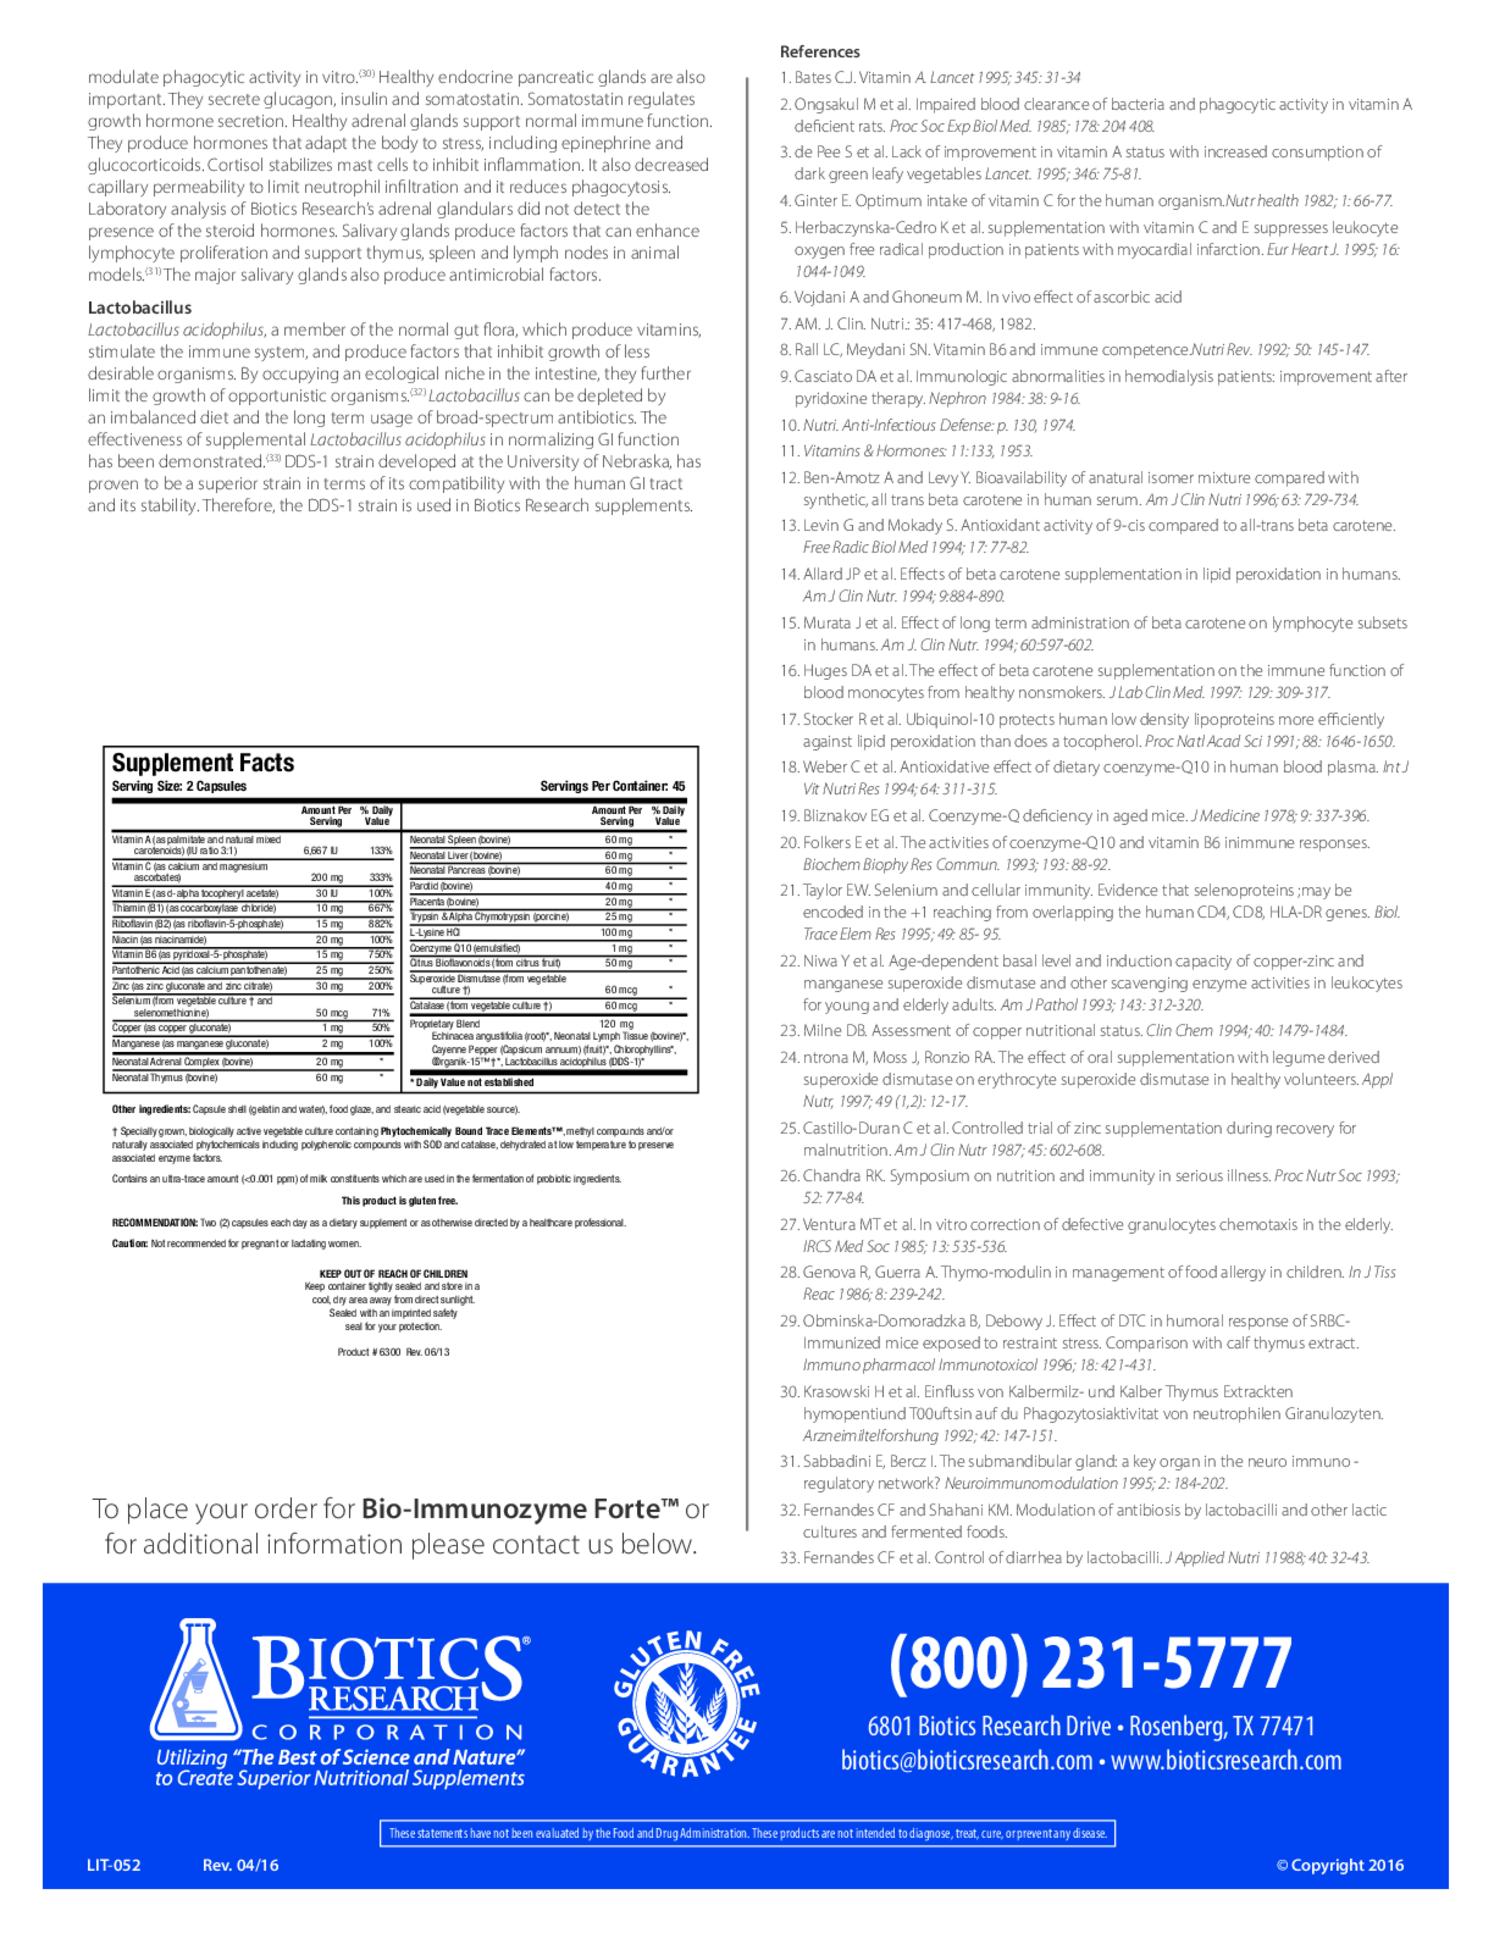 Bio-Immunozyme Forte Capsules afbeelding van document #2, gebruiksaanwijzing